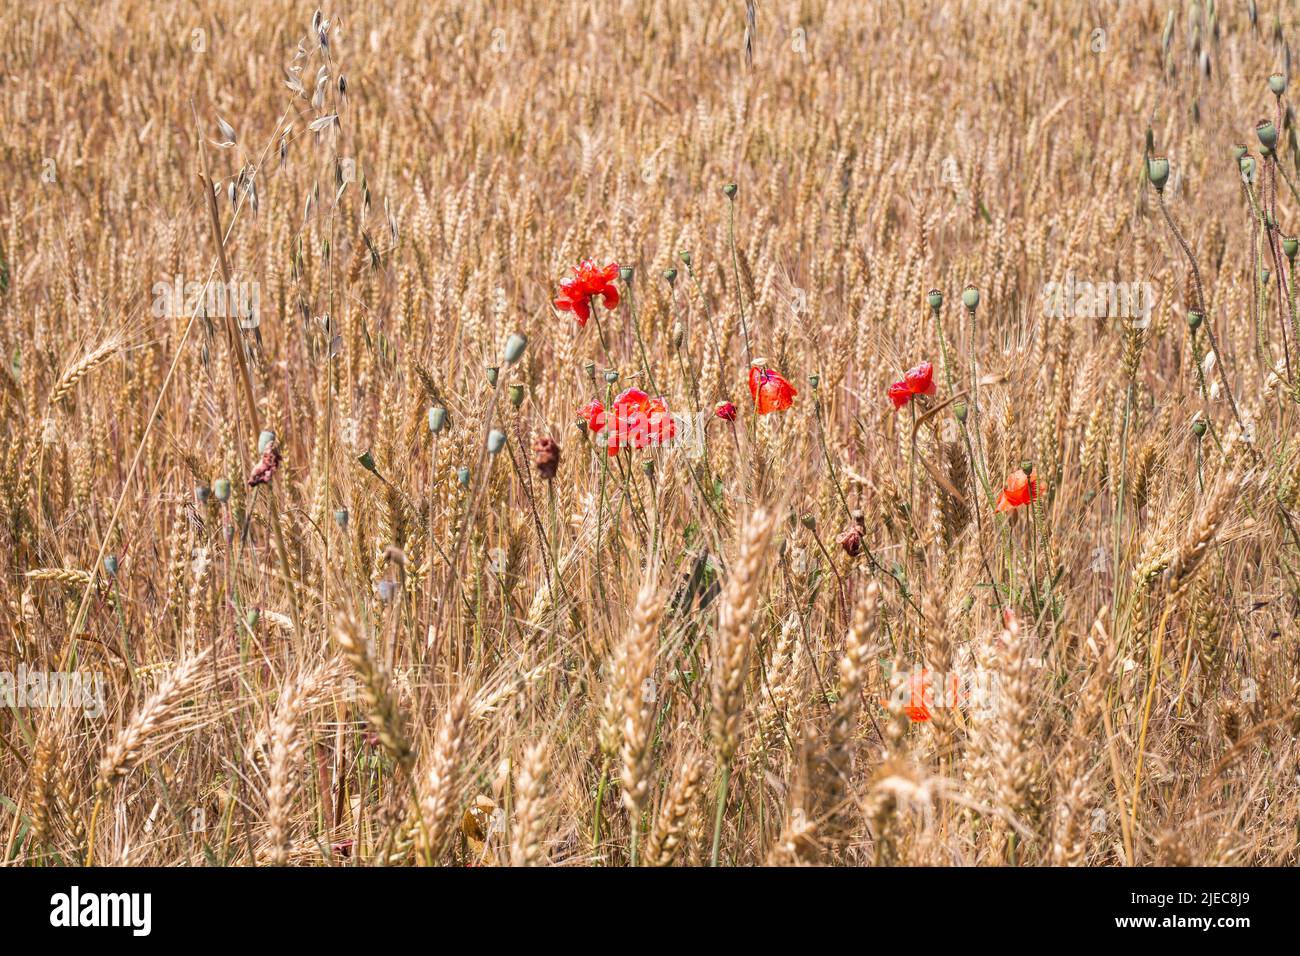 Orejas de trigo maduras y amapolas rojas en el campo. Cosecha de trigo. Foto de stock